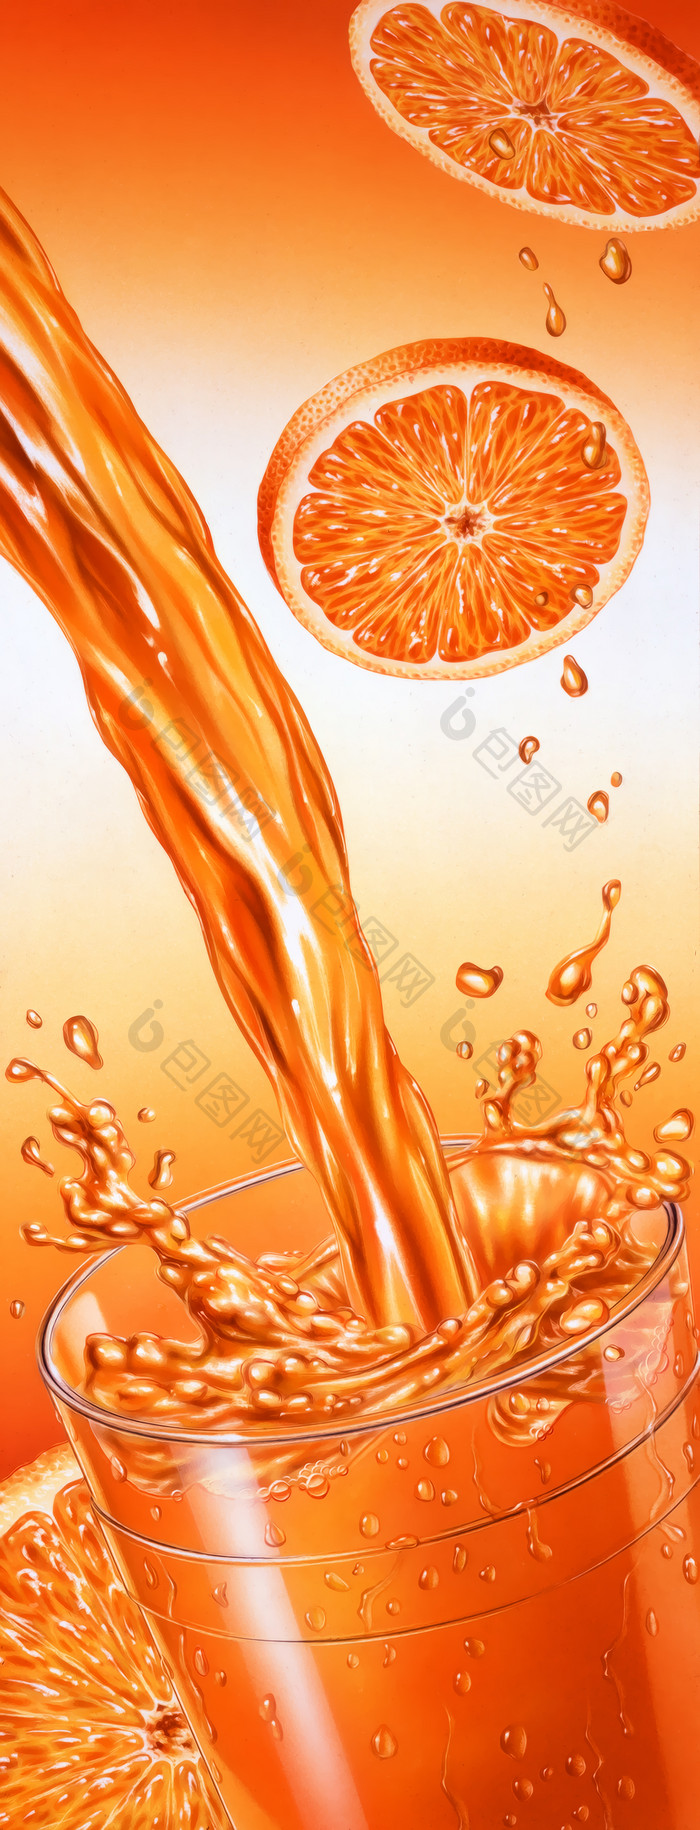 新鲜水果橙子橙汁